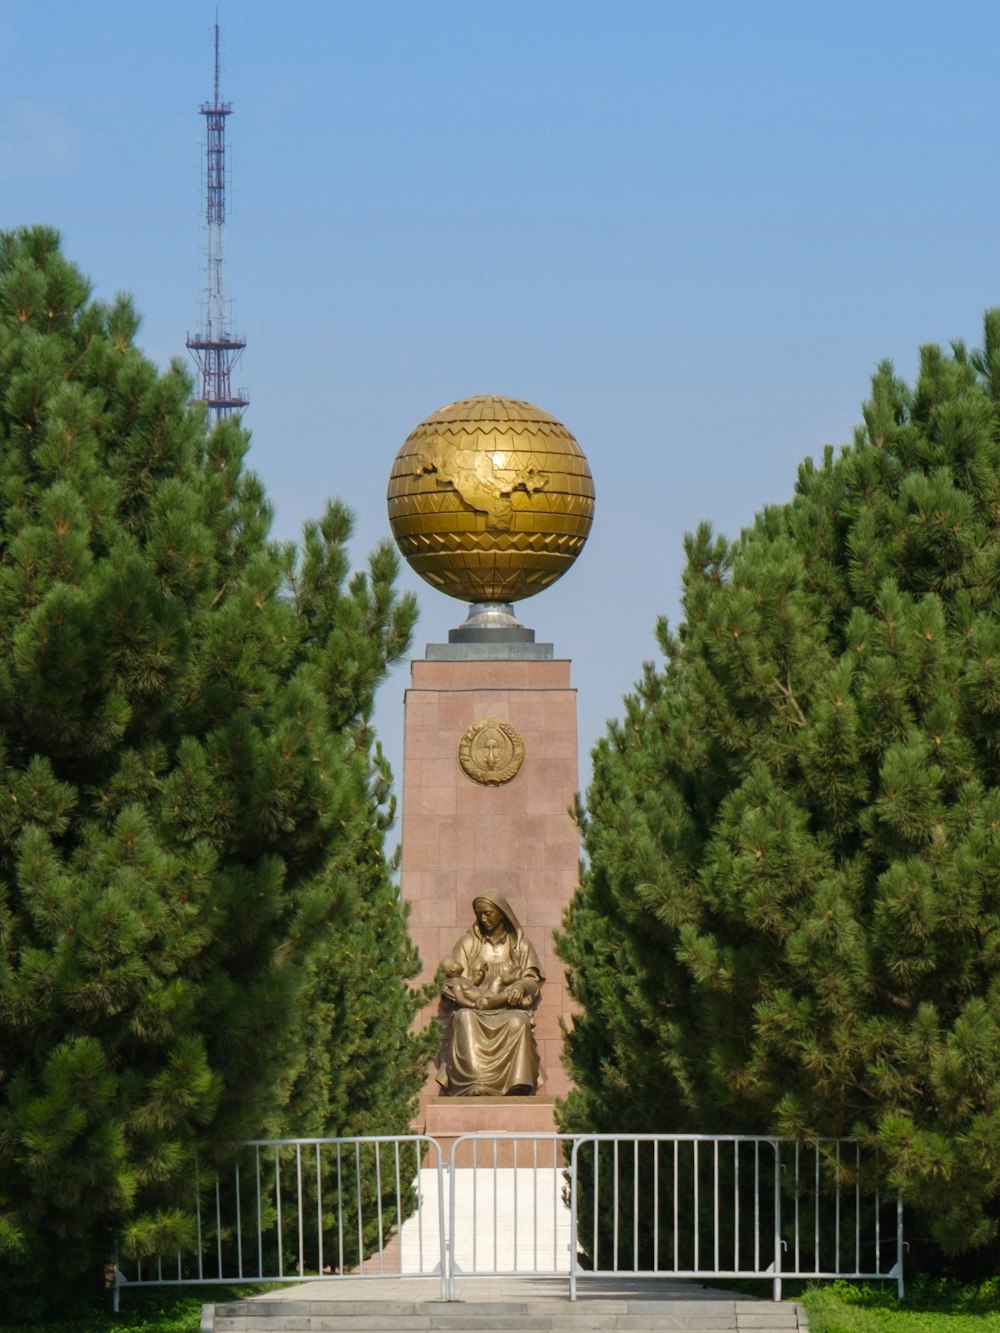 Statue de boule d’or près des arbres verts pendant la journée